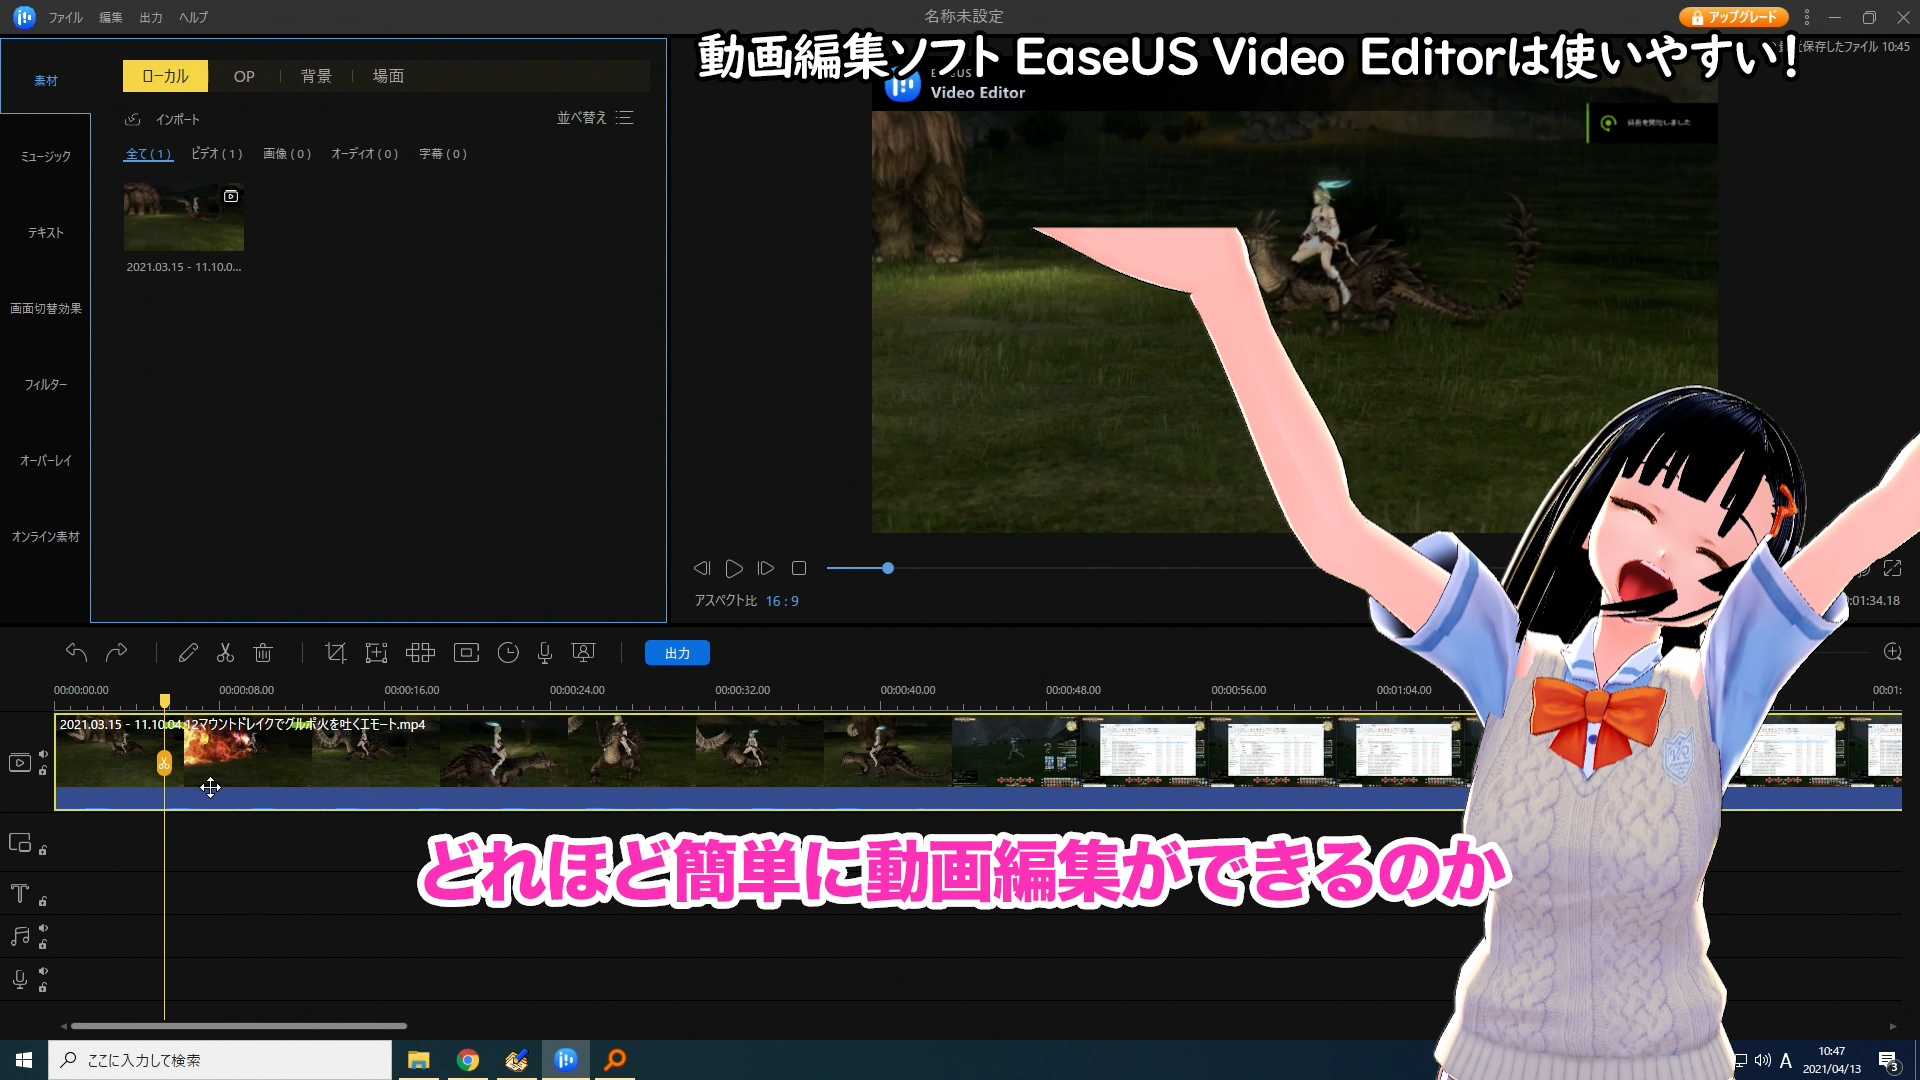 easeus video editor 評判